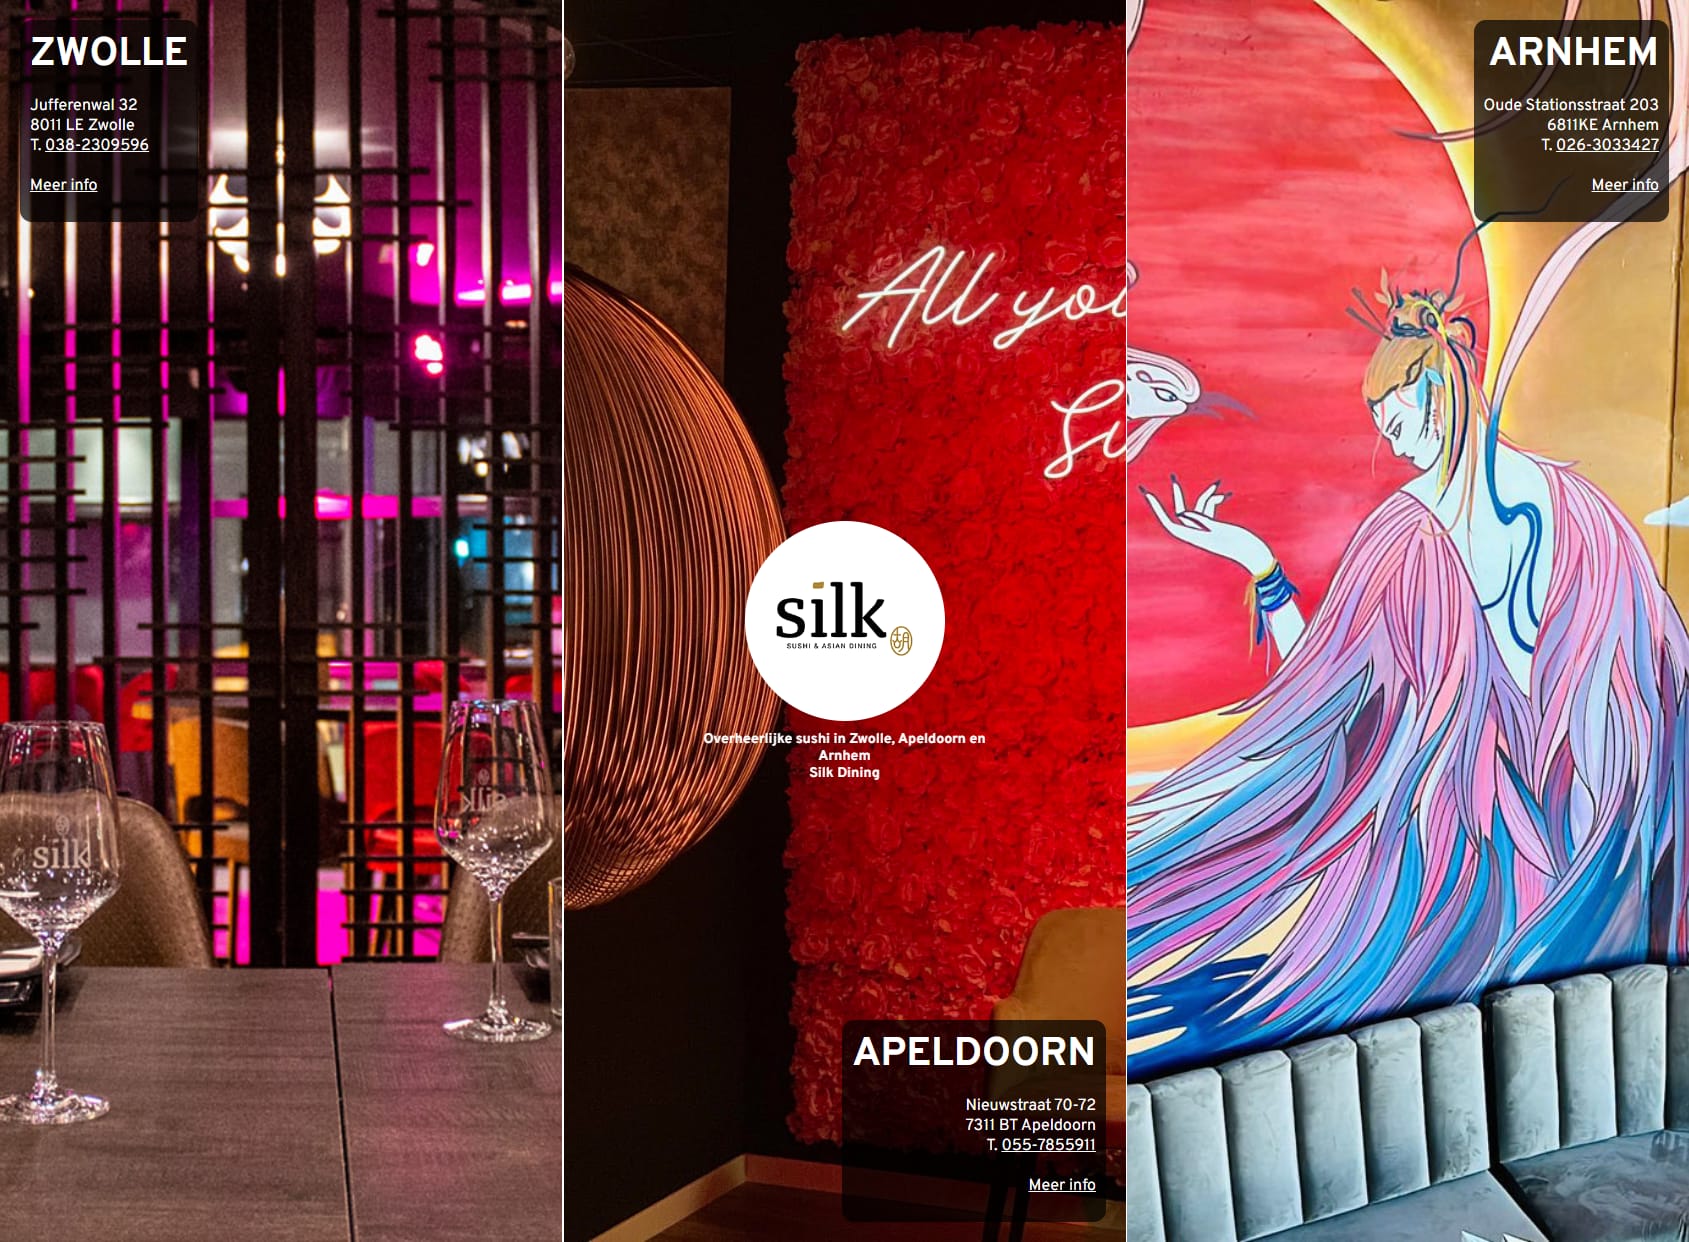 Silk | Sushi & Asian Dining